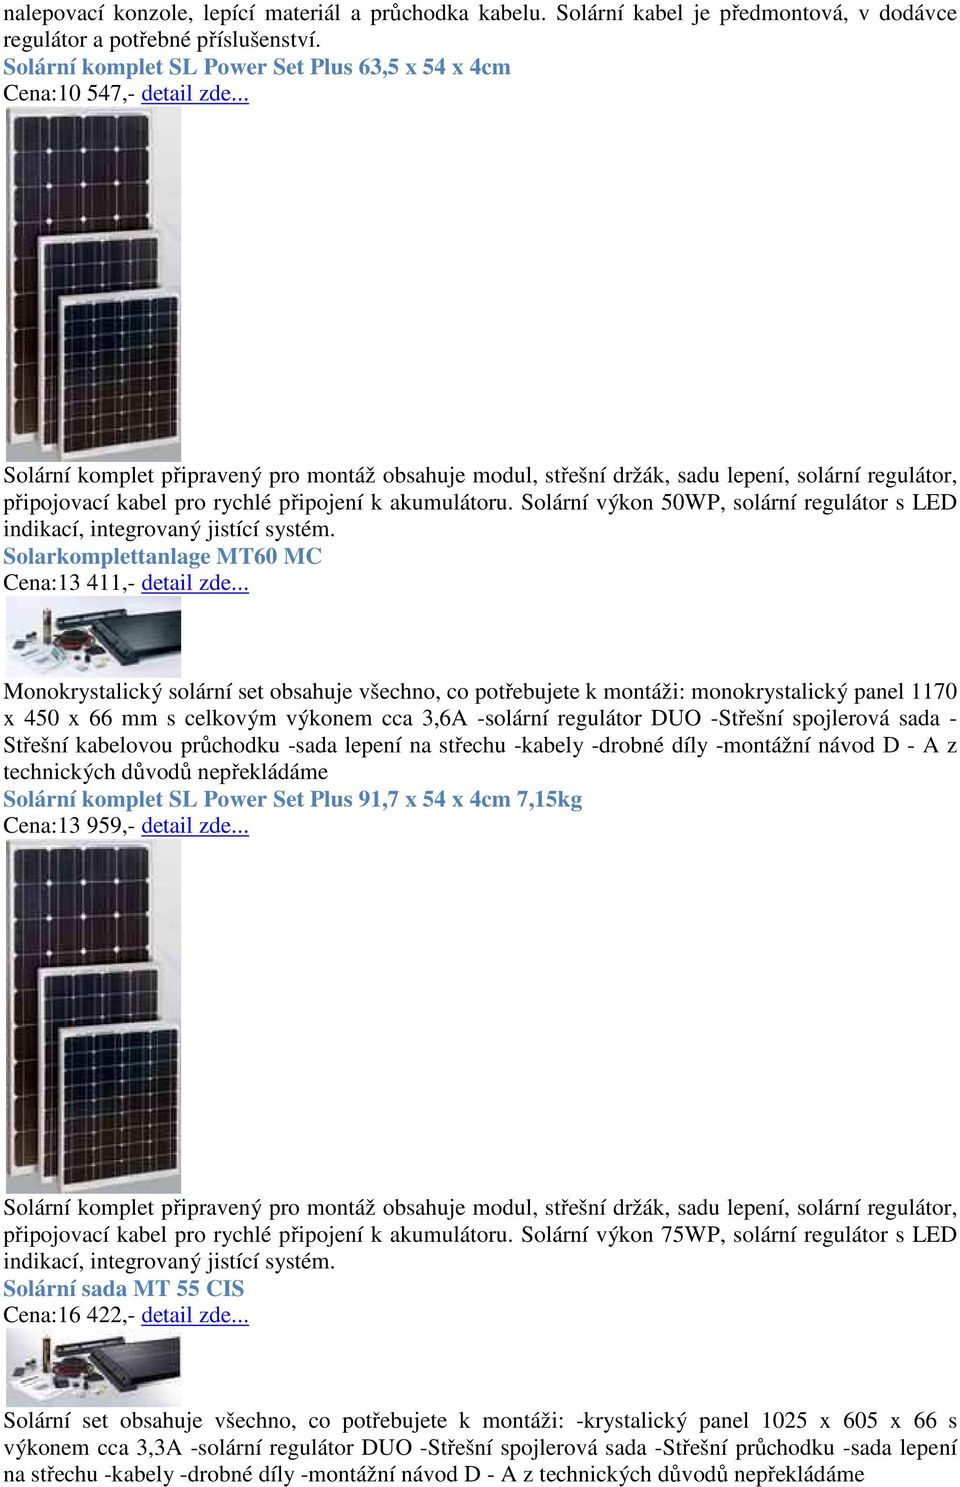 Solární komponenty - příklad - PDF Stažení zdarma